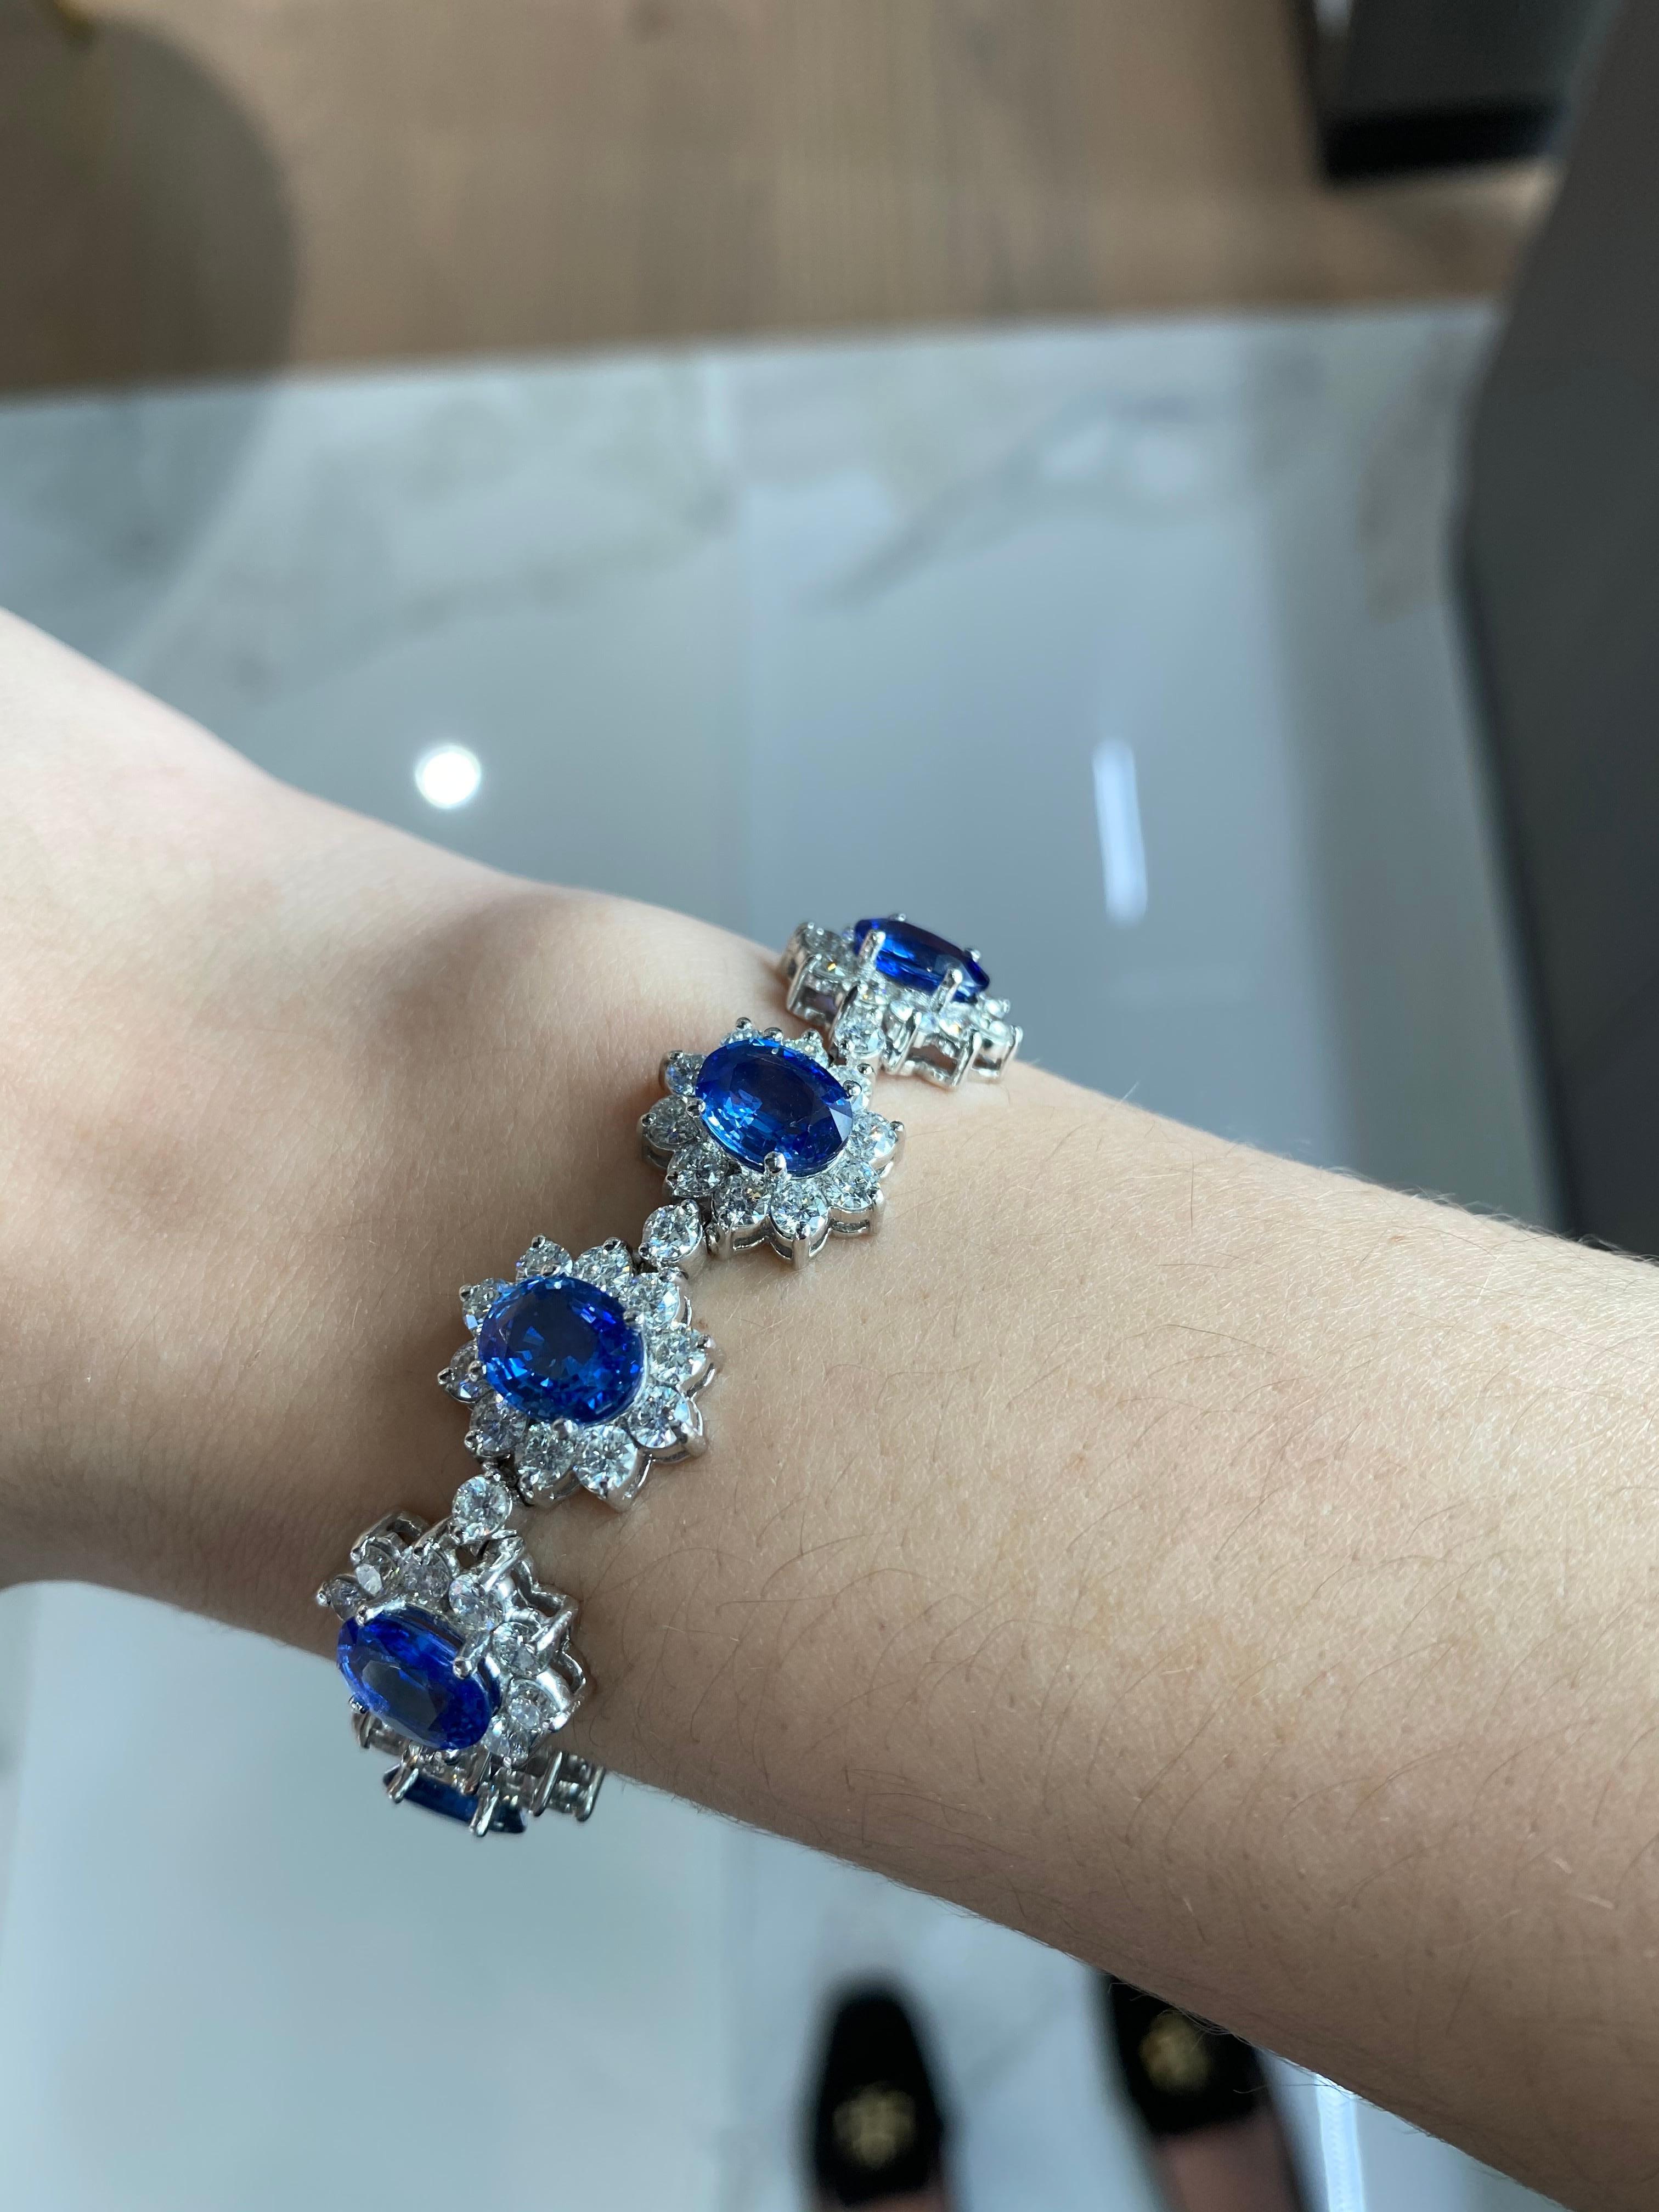 Ce bracelet absolument exquis présente un énorme poids total de 22,96 ct de 11 saphirs naturels bleus de forme ovale, richement saturés, entourés de halos de diamants ronds formant une forme florale. Les diamants ronds représentent un poids total de